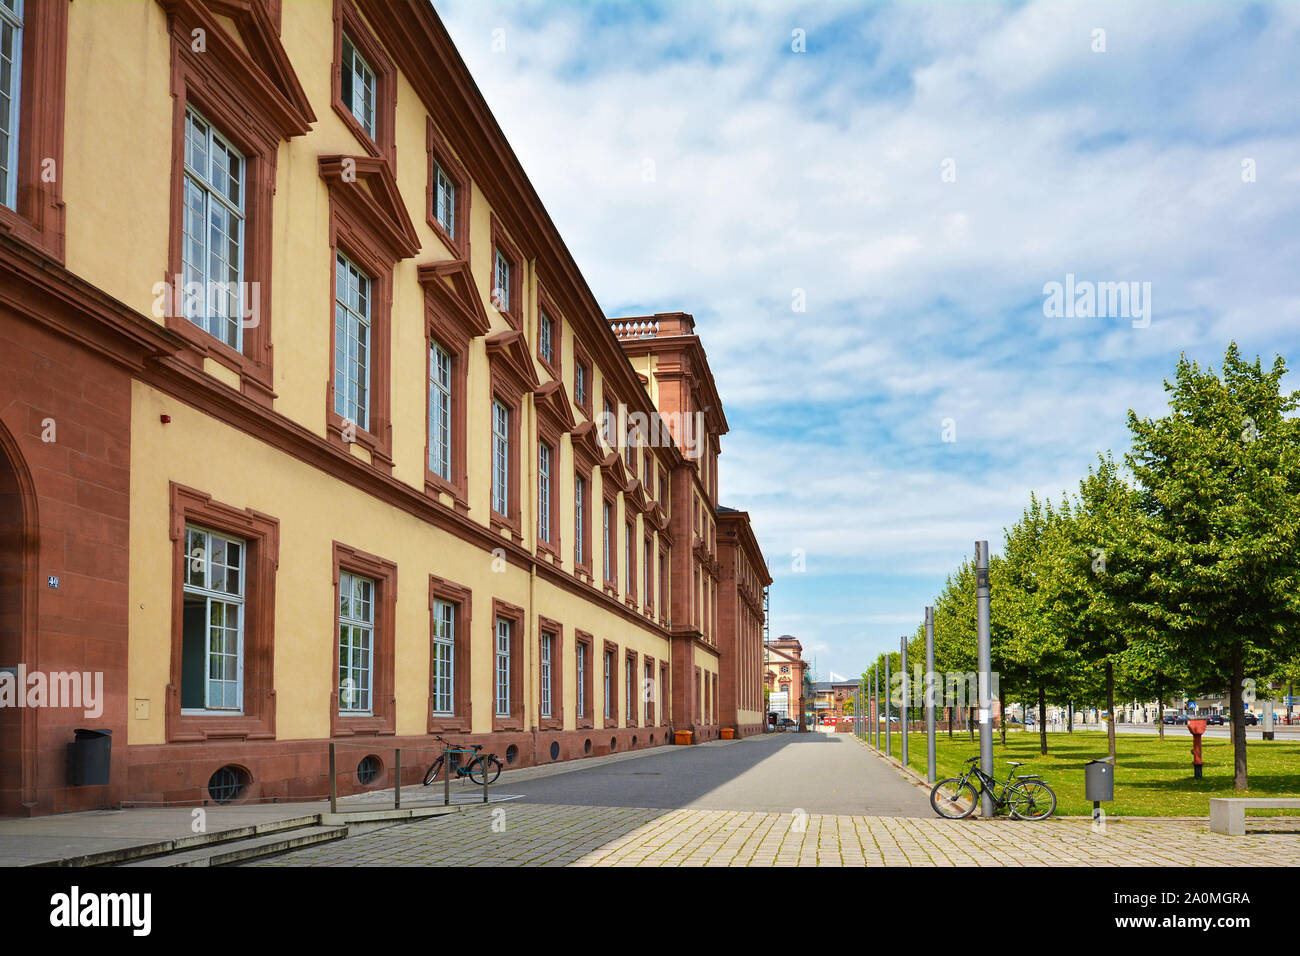 Mannheim, Allemagne - Juillet 2019 : Vue de côté façade de l'ancien édifice baroque historique de la recherche publique Université de Mannheim Banque D'Images